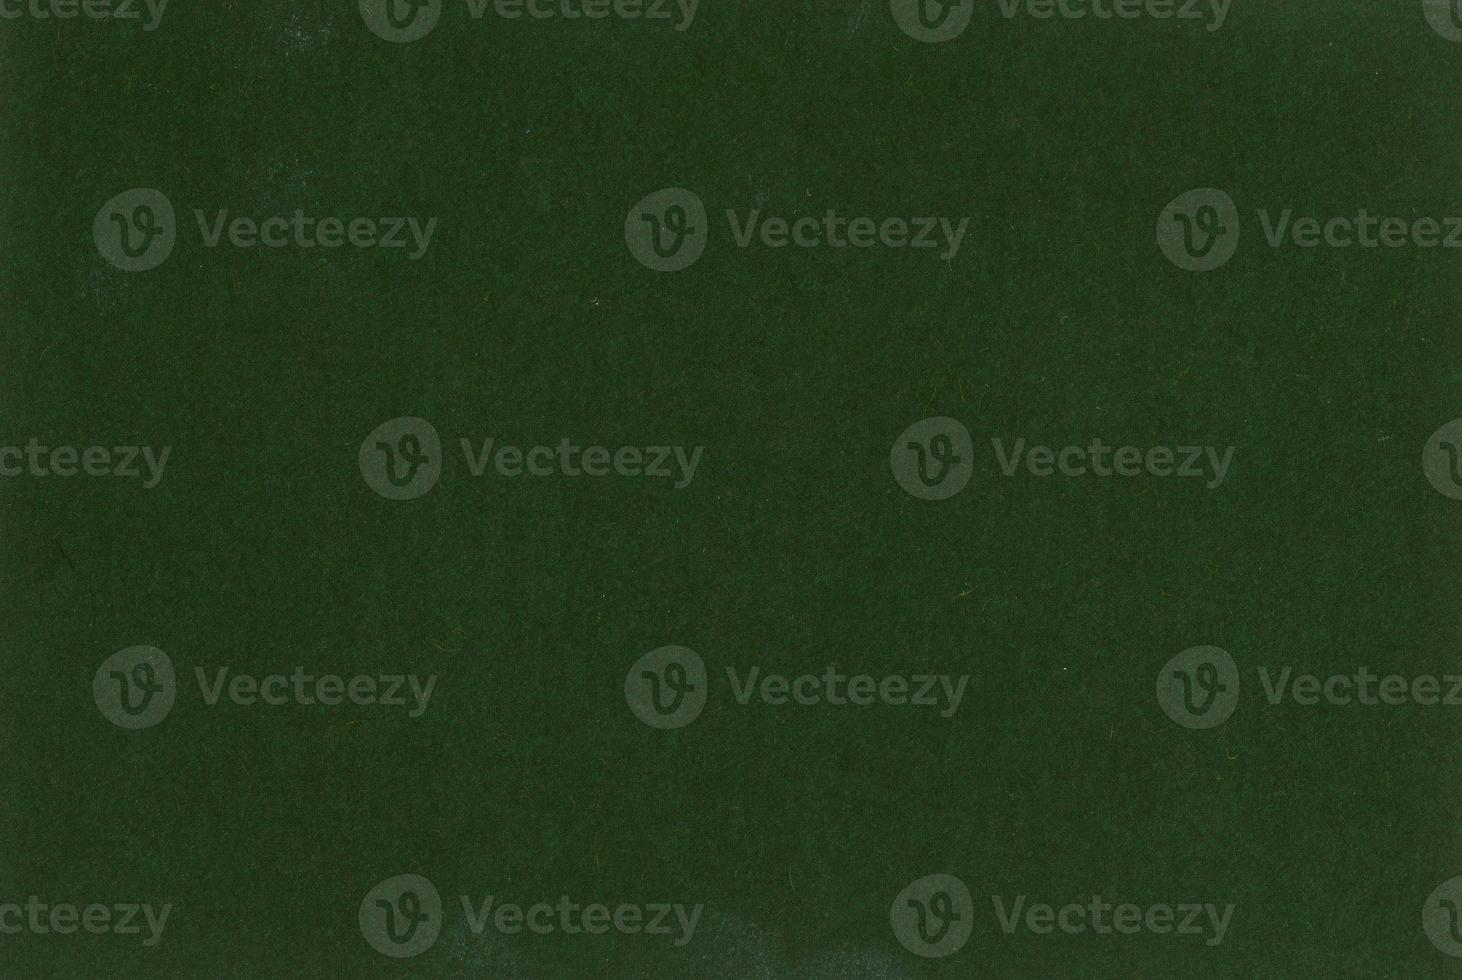 Dark green paper texture background photo